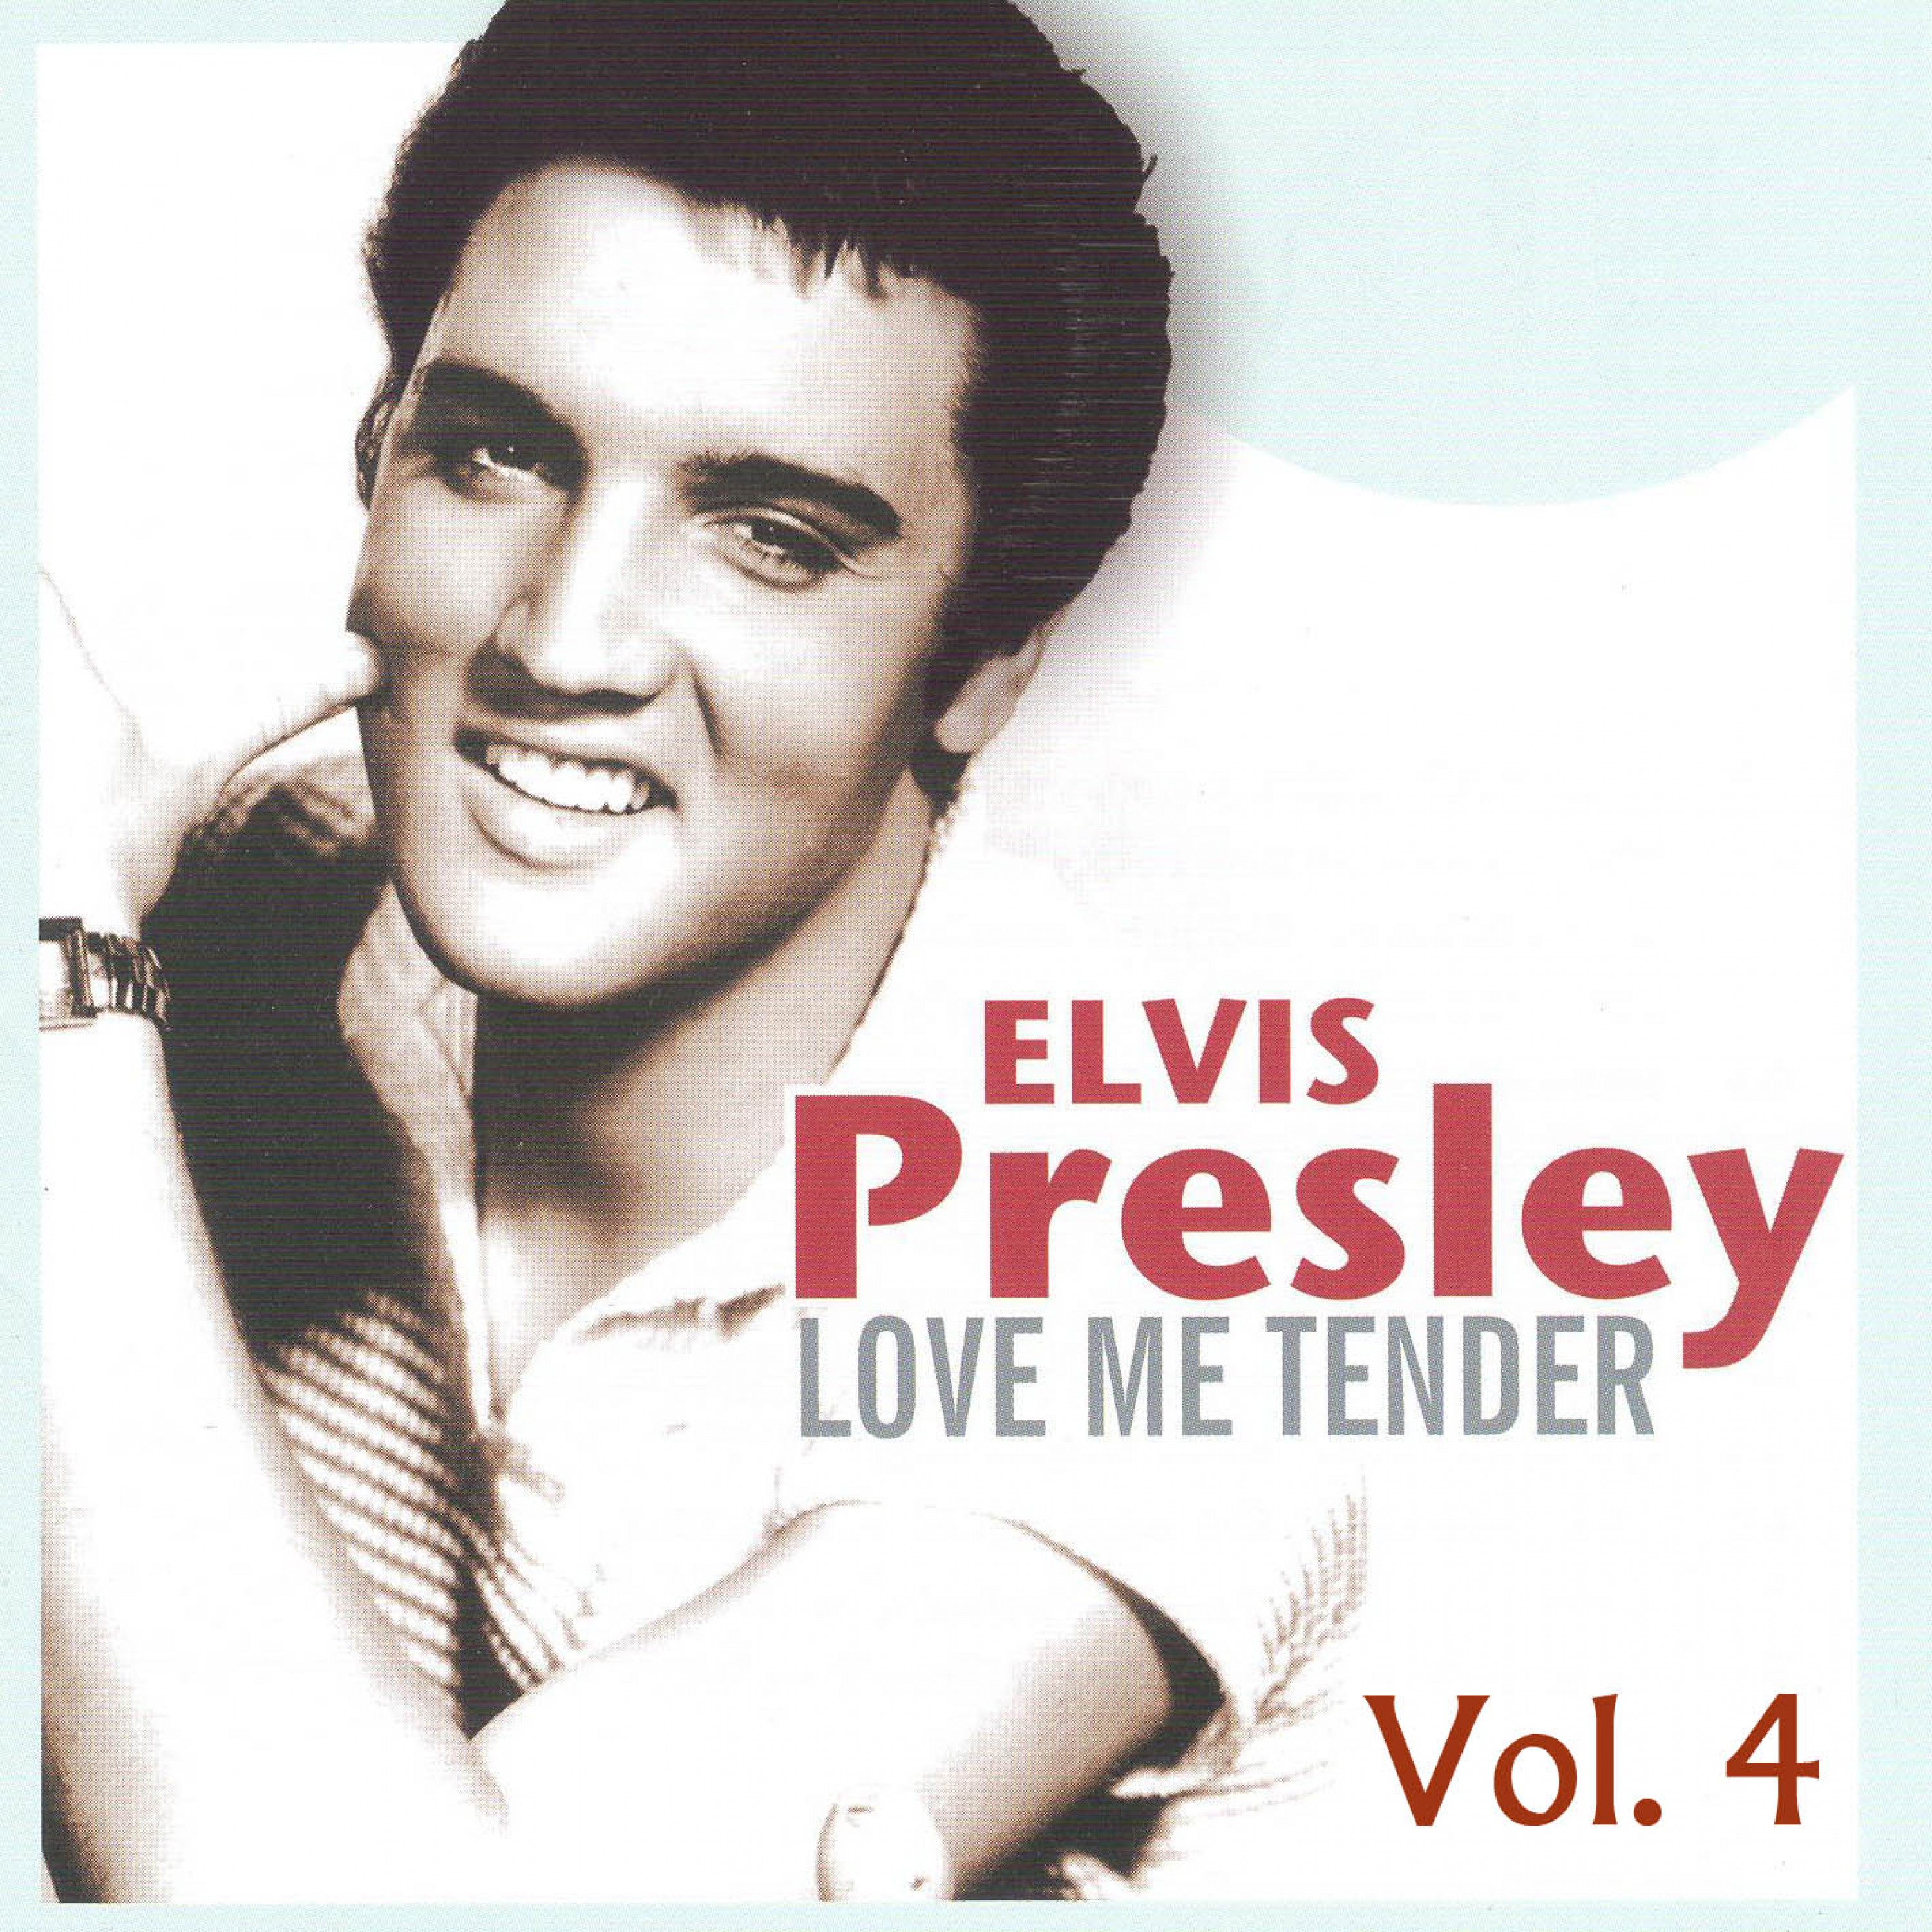 Elvis Presley Vol. 4